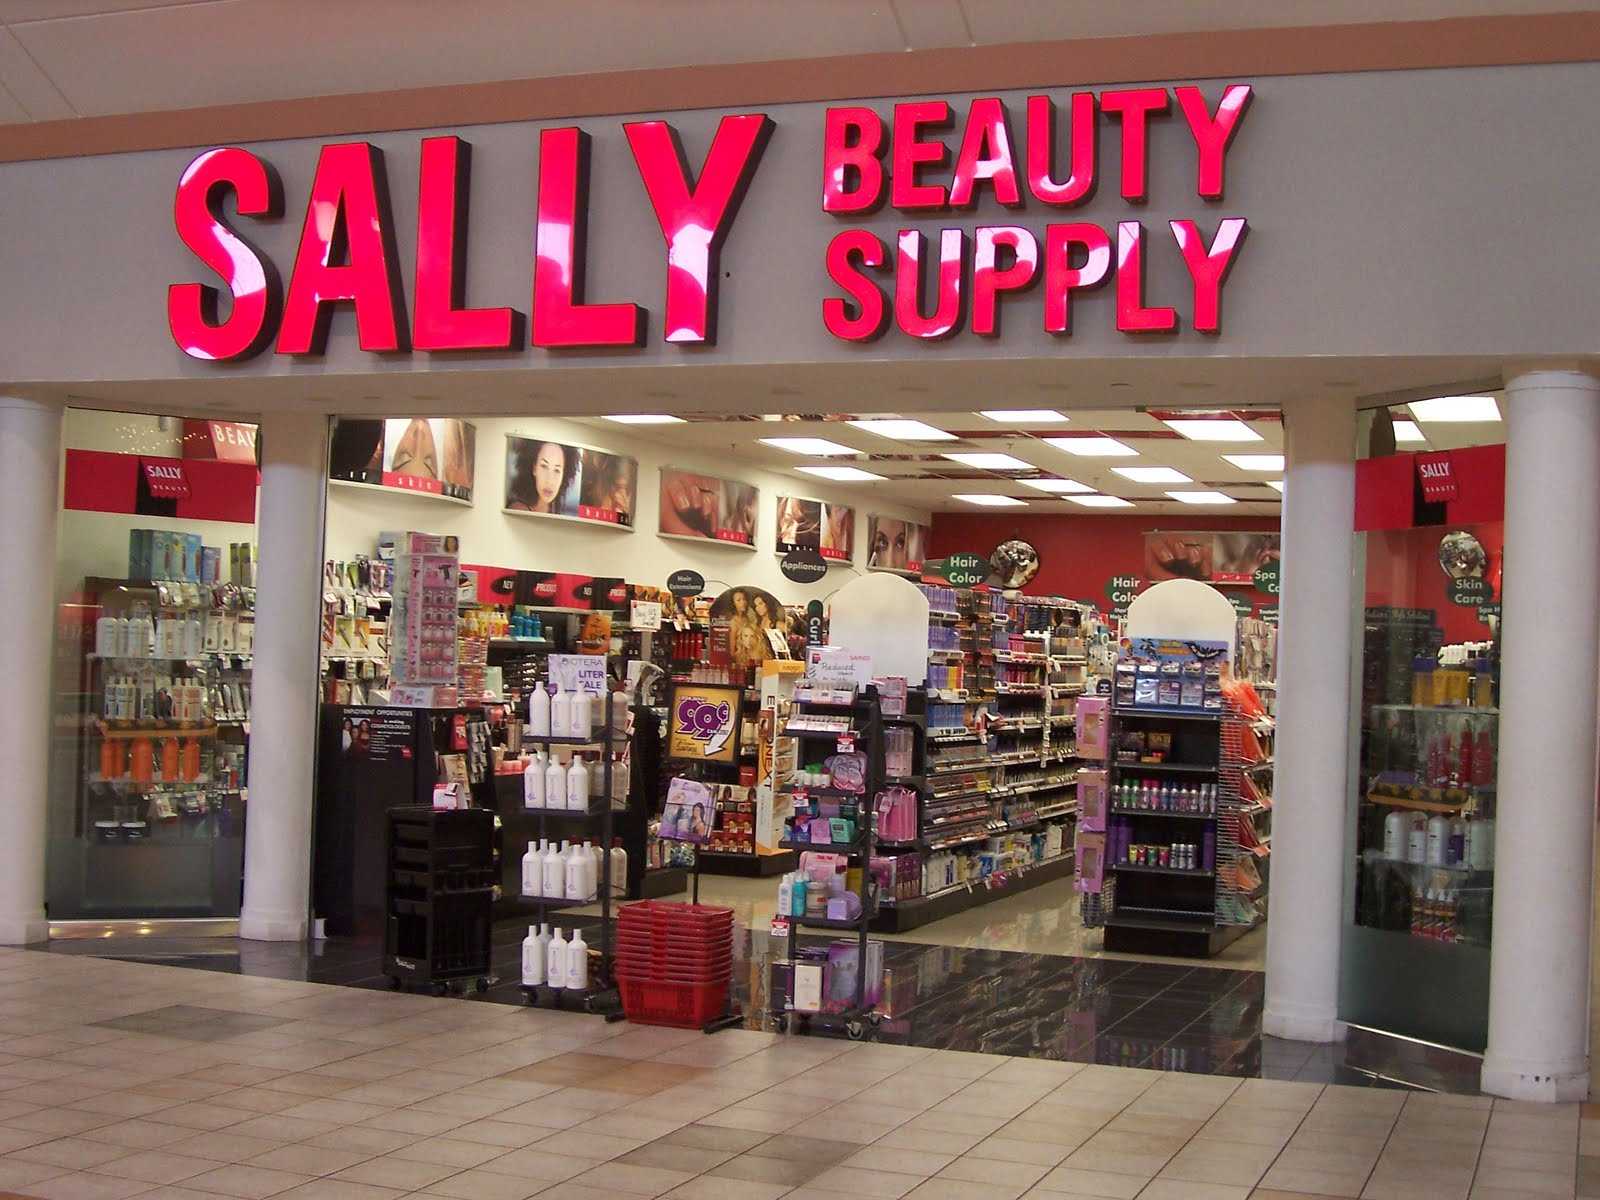 Sally Beauty supply near me, sally's beauty supply near me